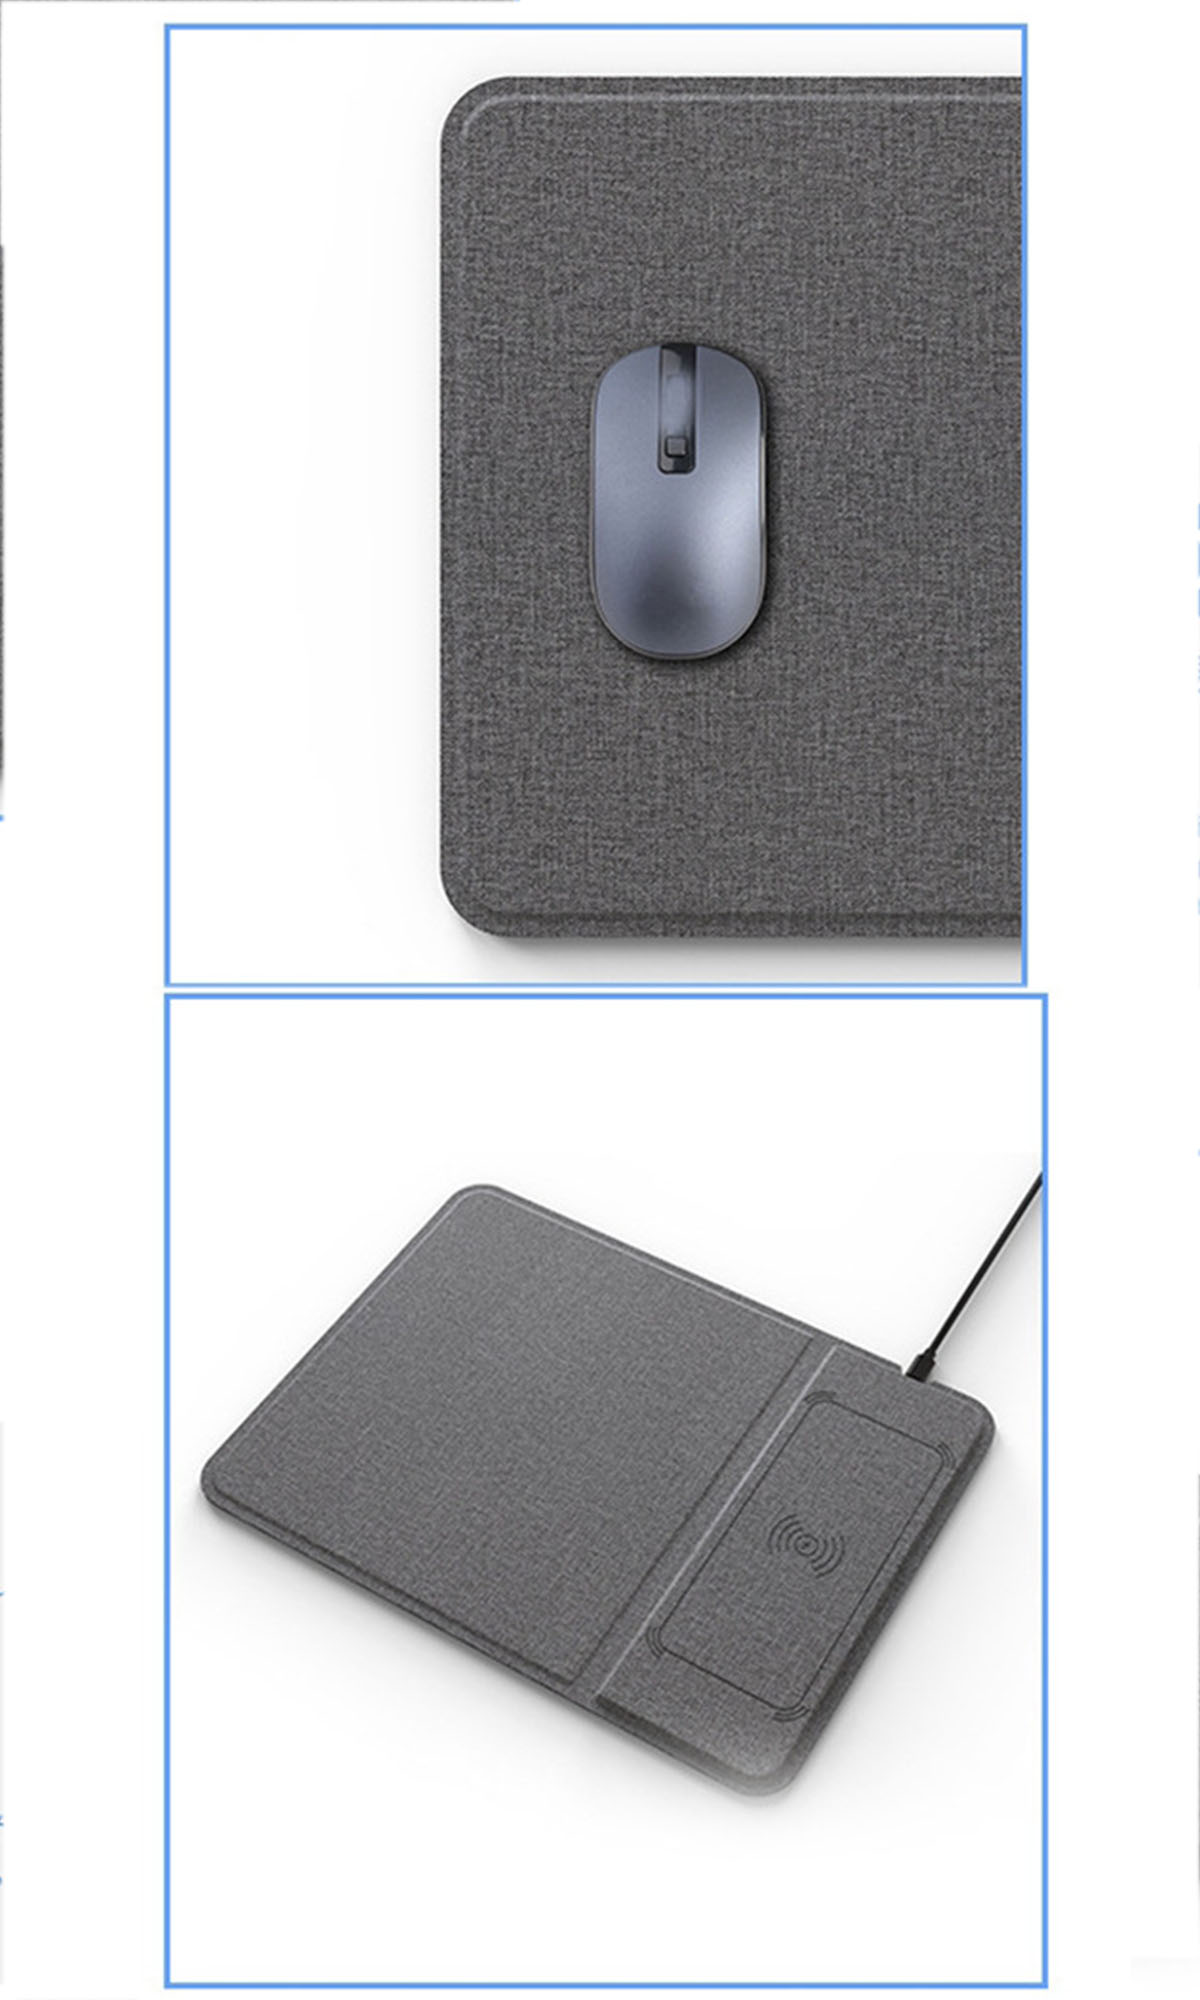 Drahtloser mit BRIGHTAKE Desktop-Gerät mm) 2-in-1 - Multi-Funktionales Intelligentes 350 Mauspad (2 x kabellosen Handy-Ladefunktion Mousepad zum Aufladen mm